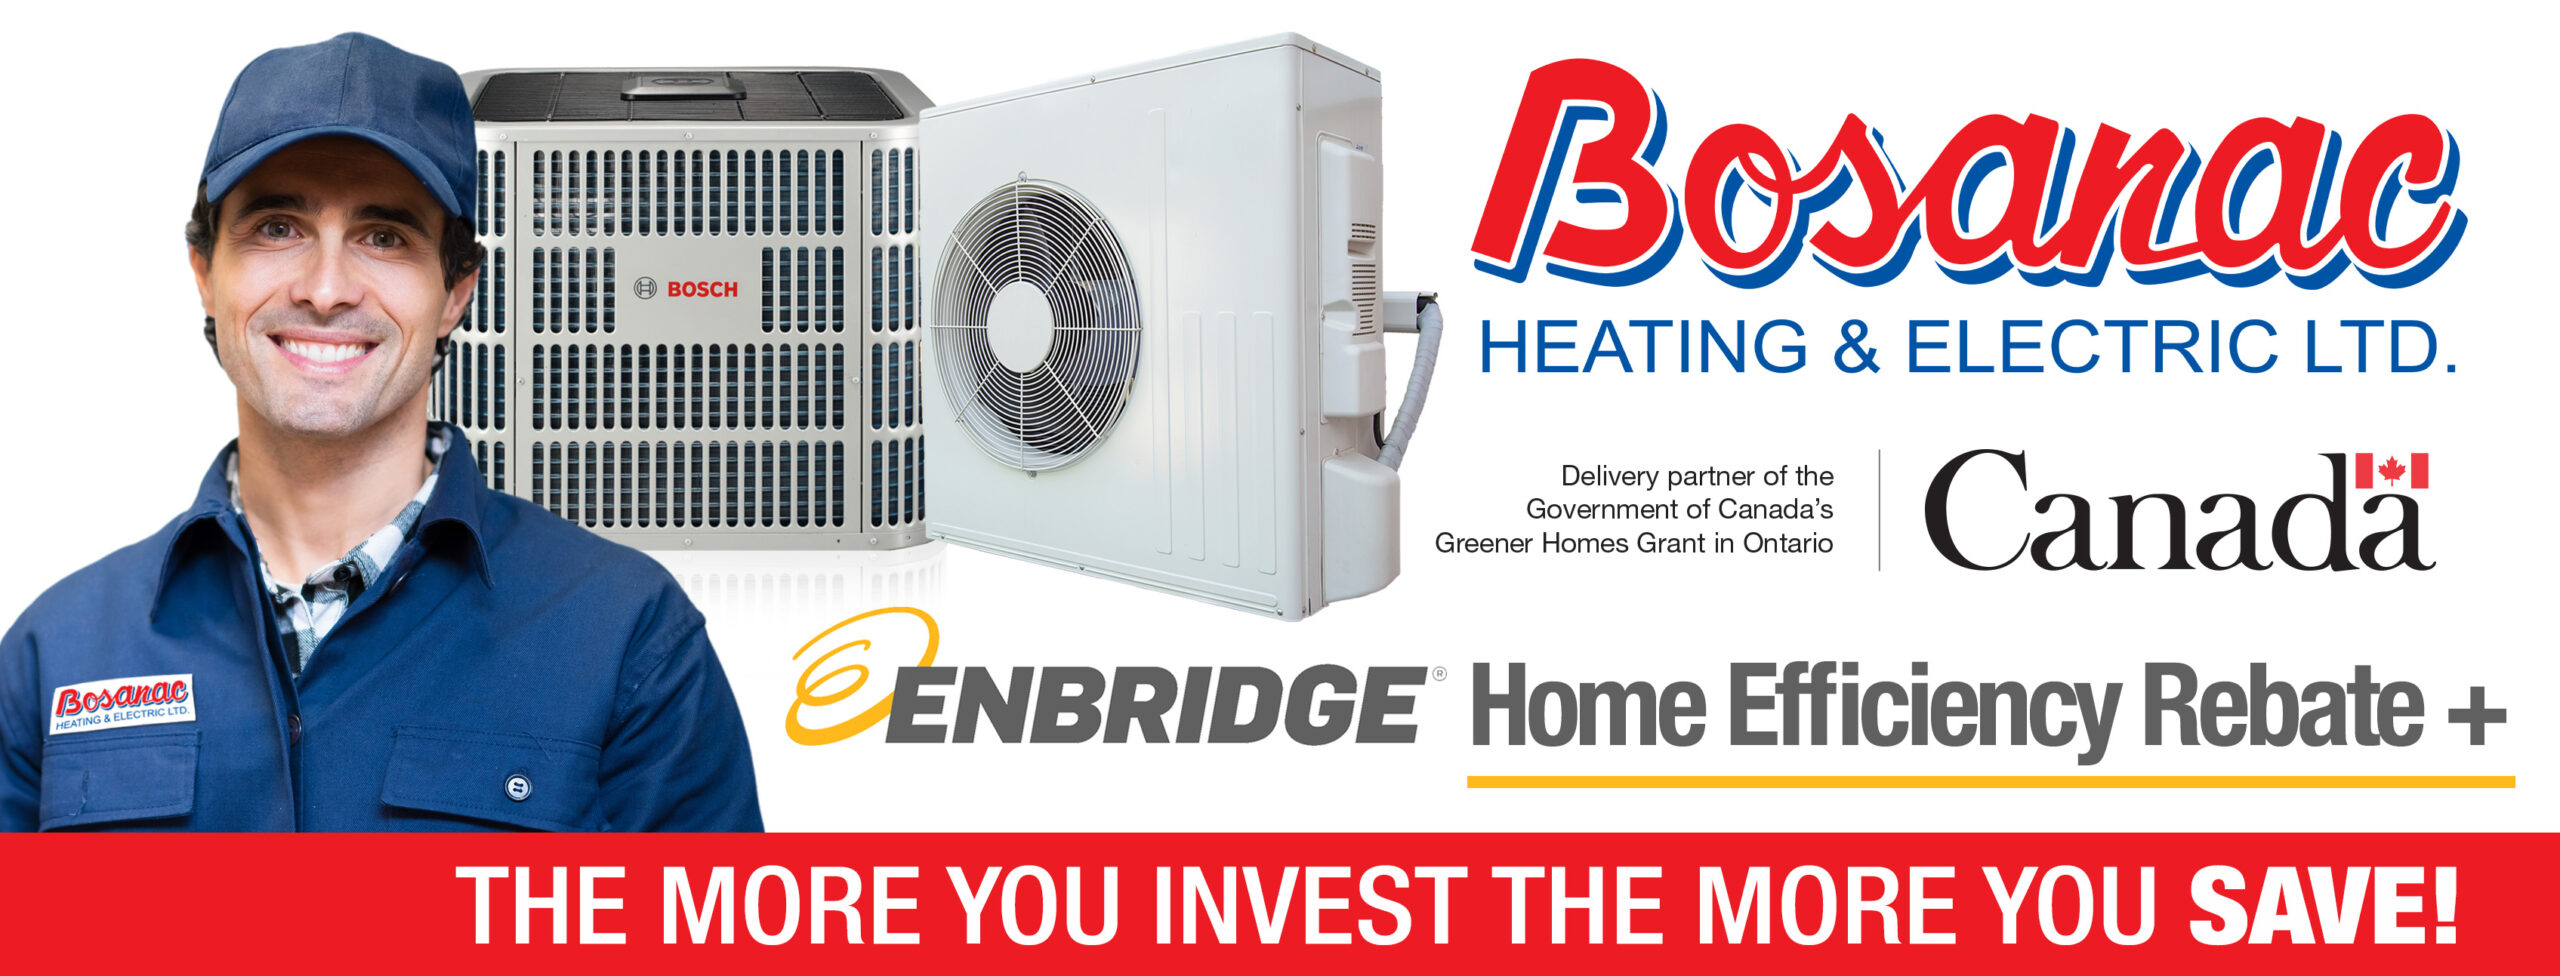 Bosanac & Enbridge Home Efficiency Rebate Plus